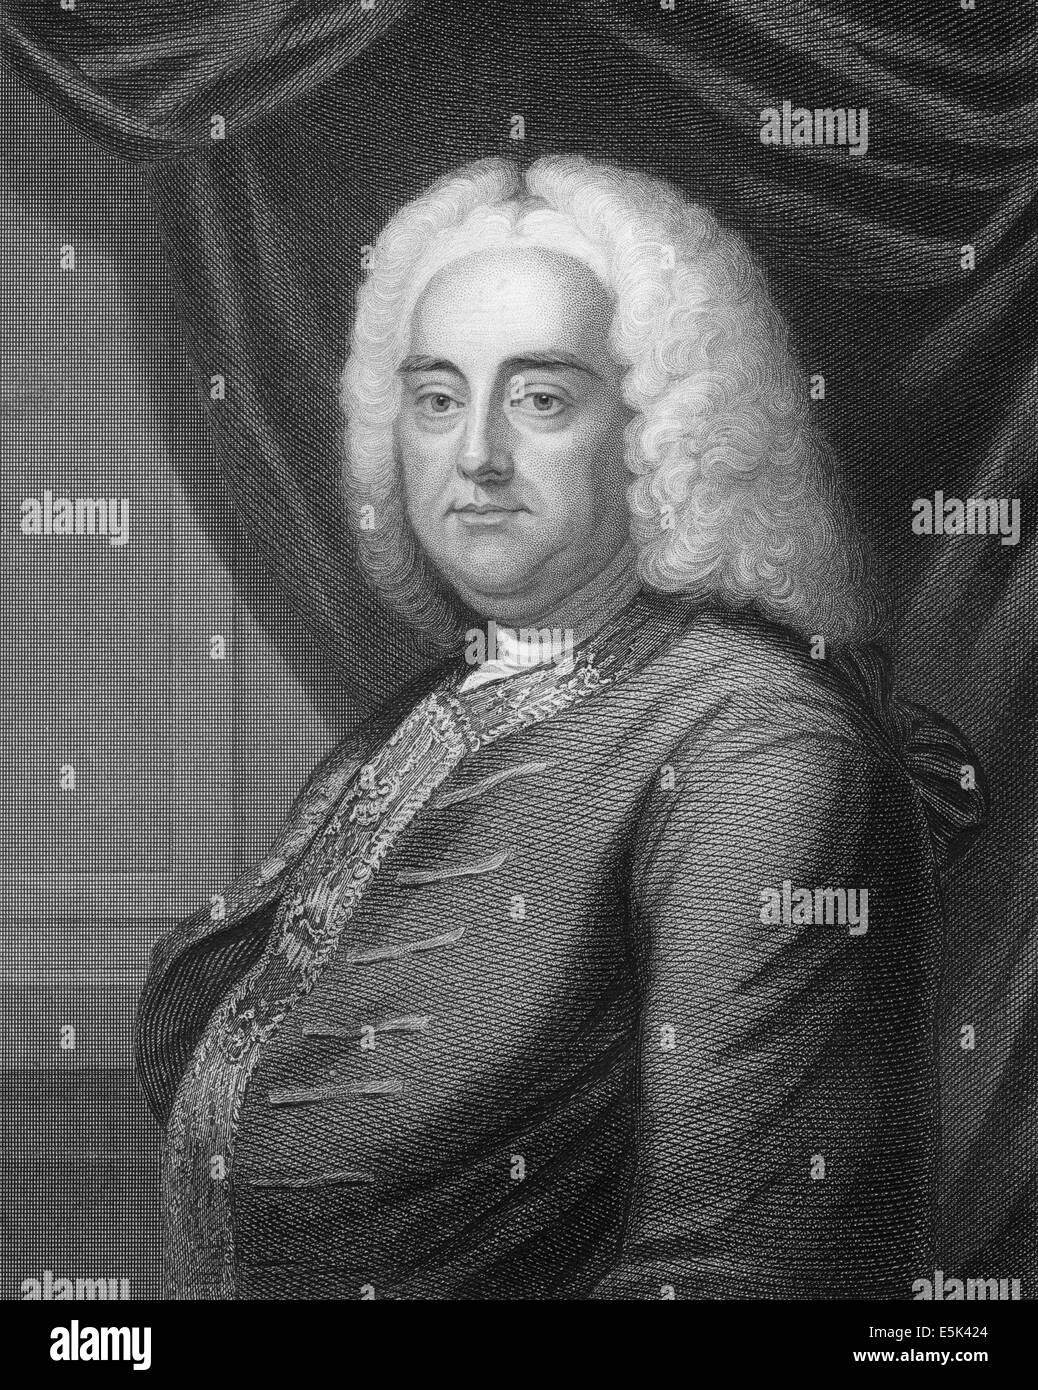 George Frederick Handel o George Frideric Handel, 1685 - 1759, un compositor germano-británico del Barroco. Foto de stock